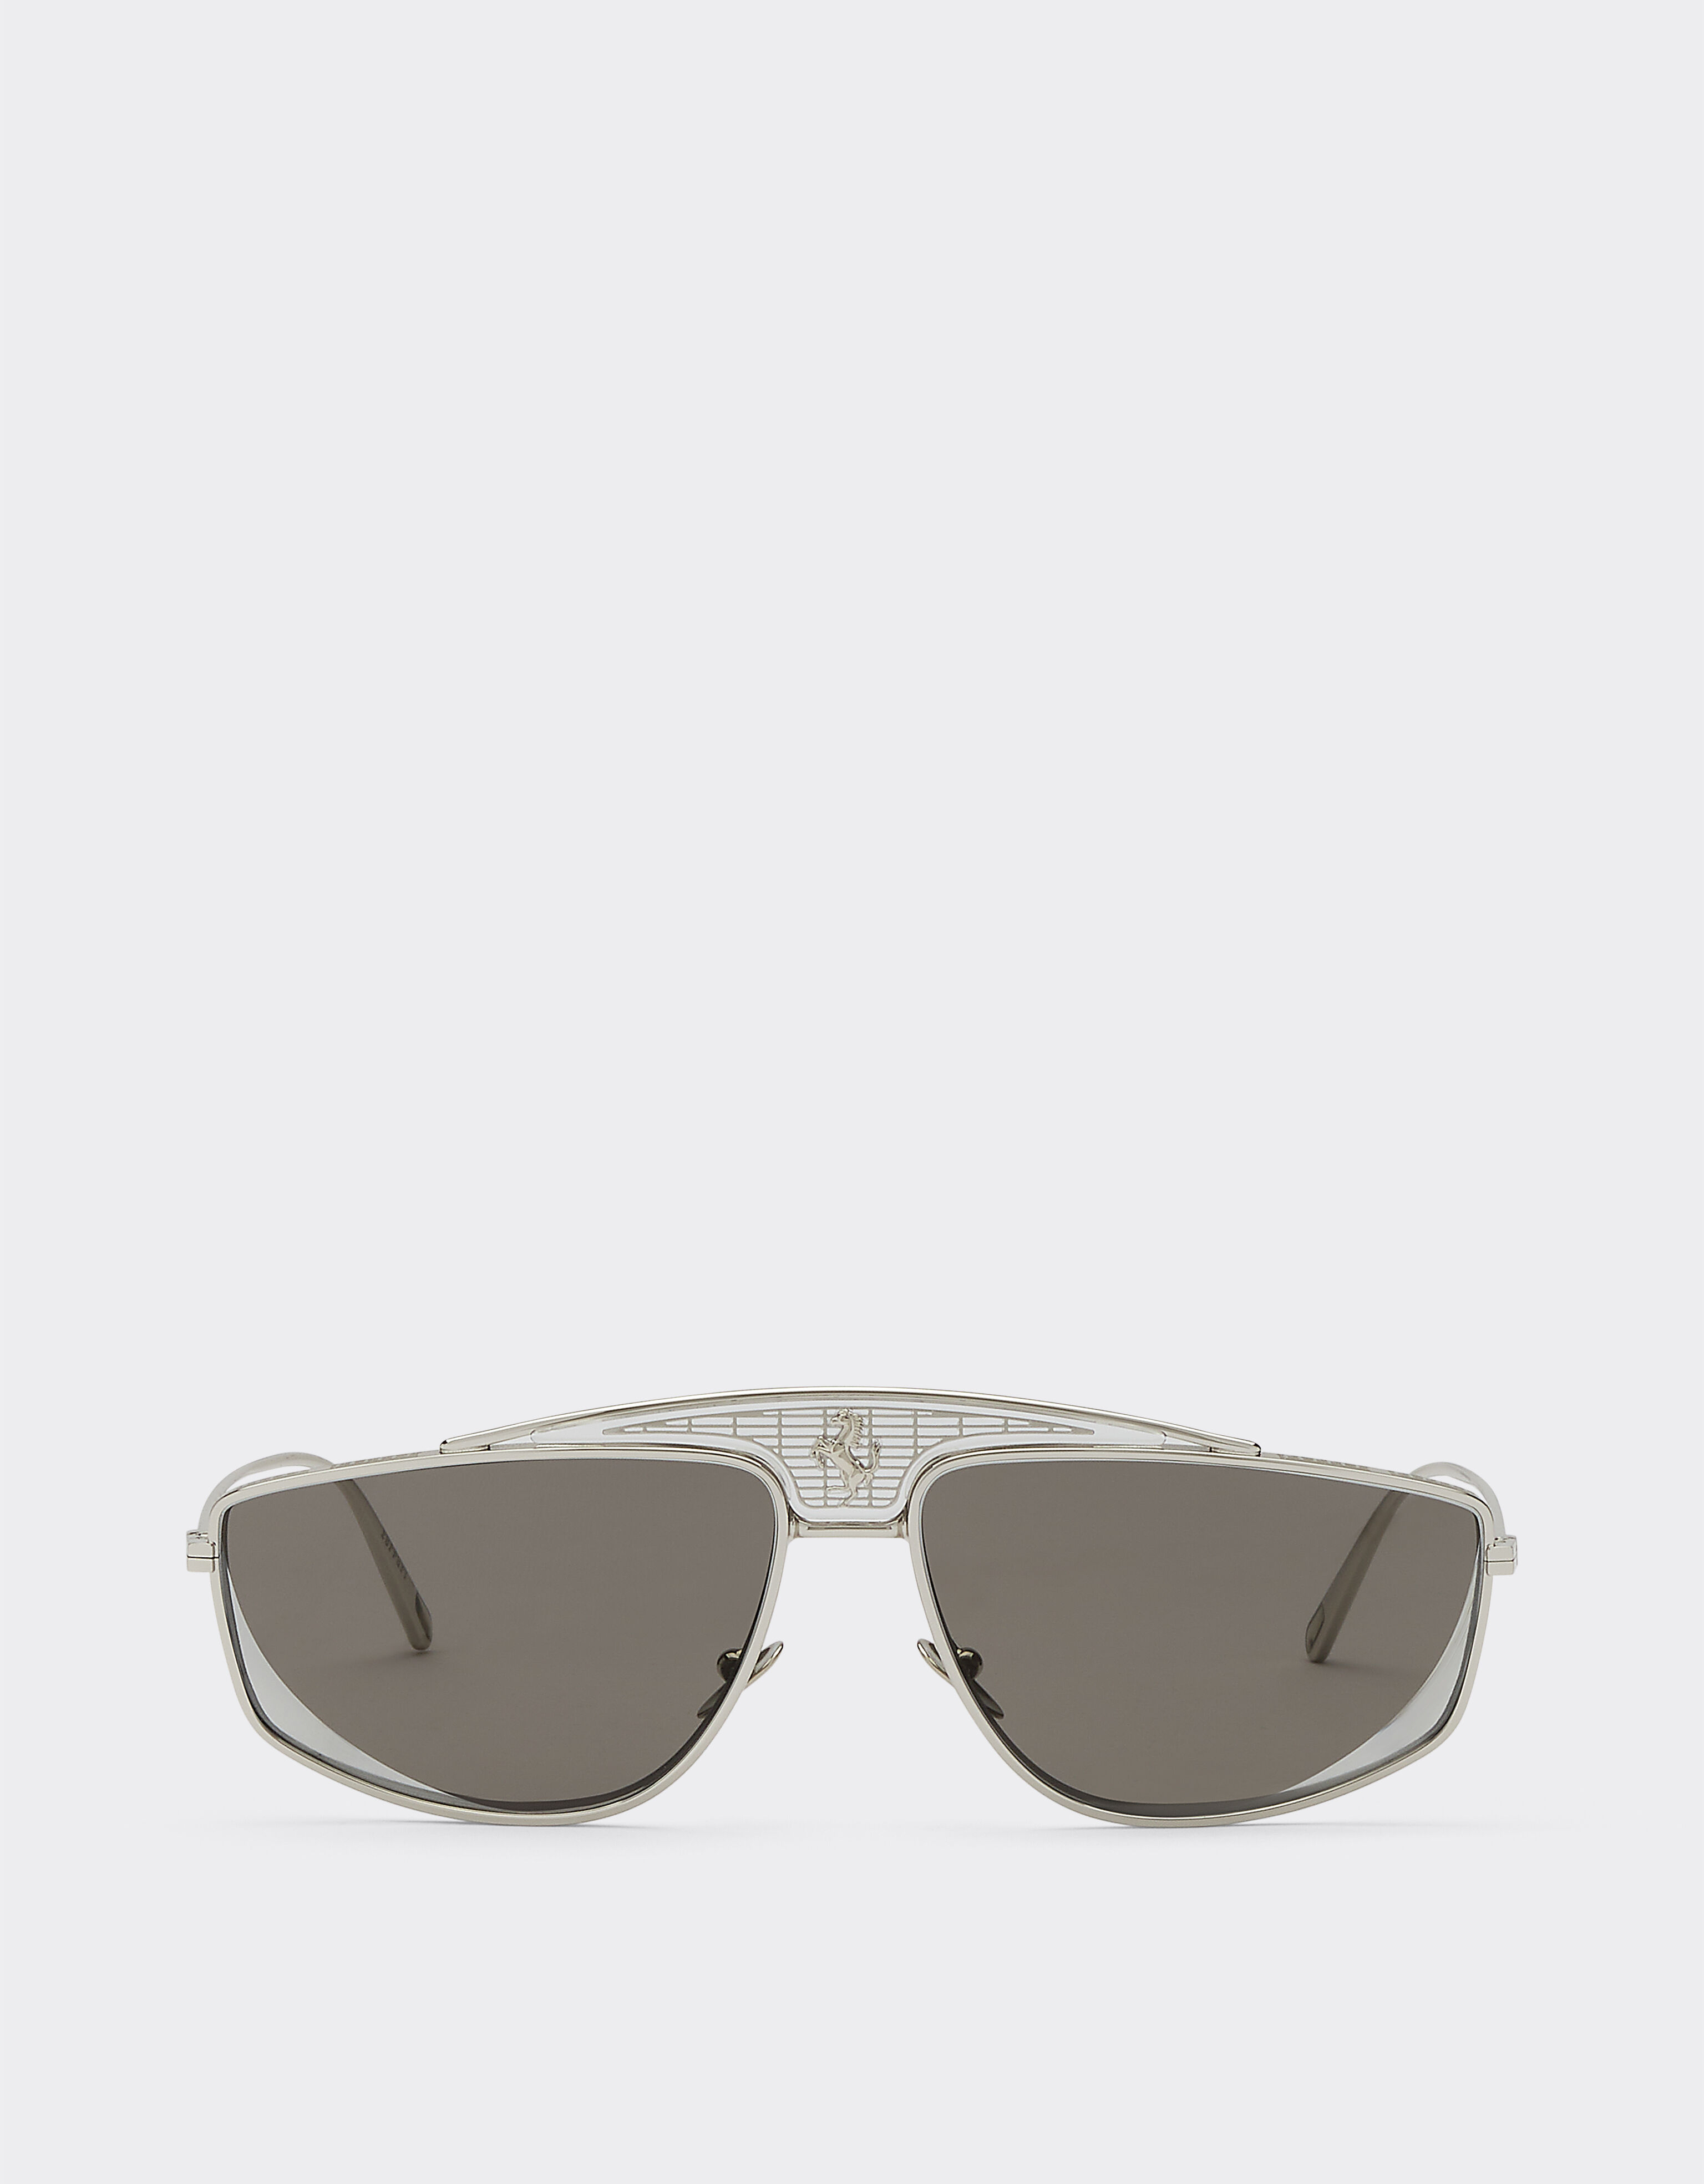 Ferrari Ferrari sunglasses with silver mirrored lenses Silver F1247f